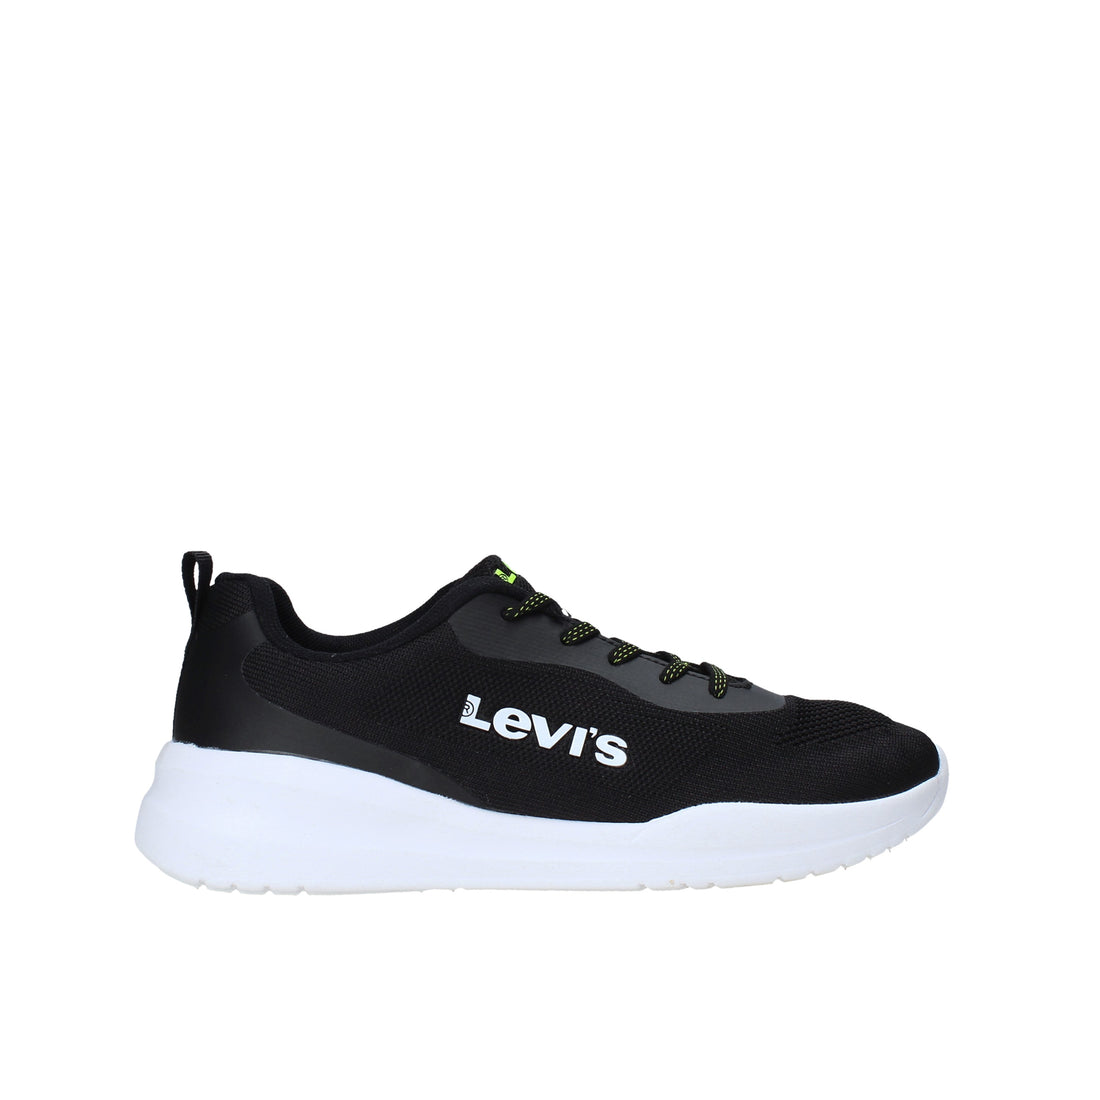 Sneakers Nero Levi's